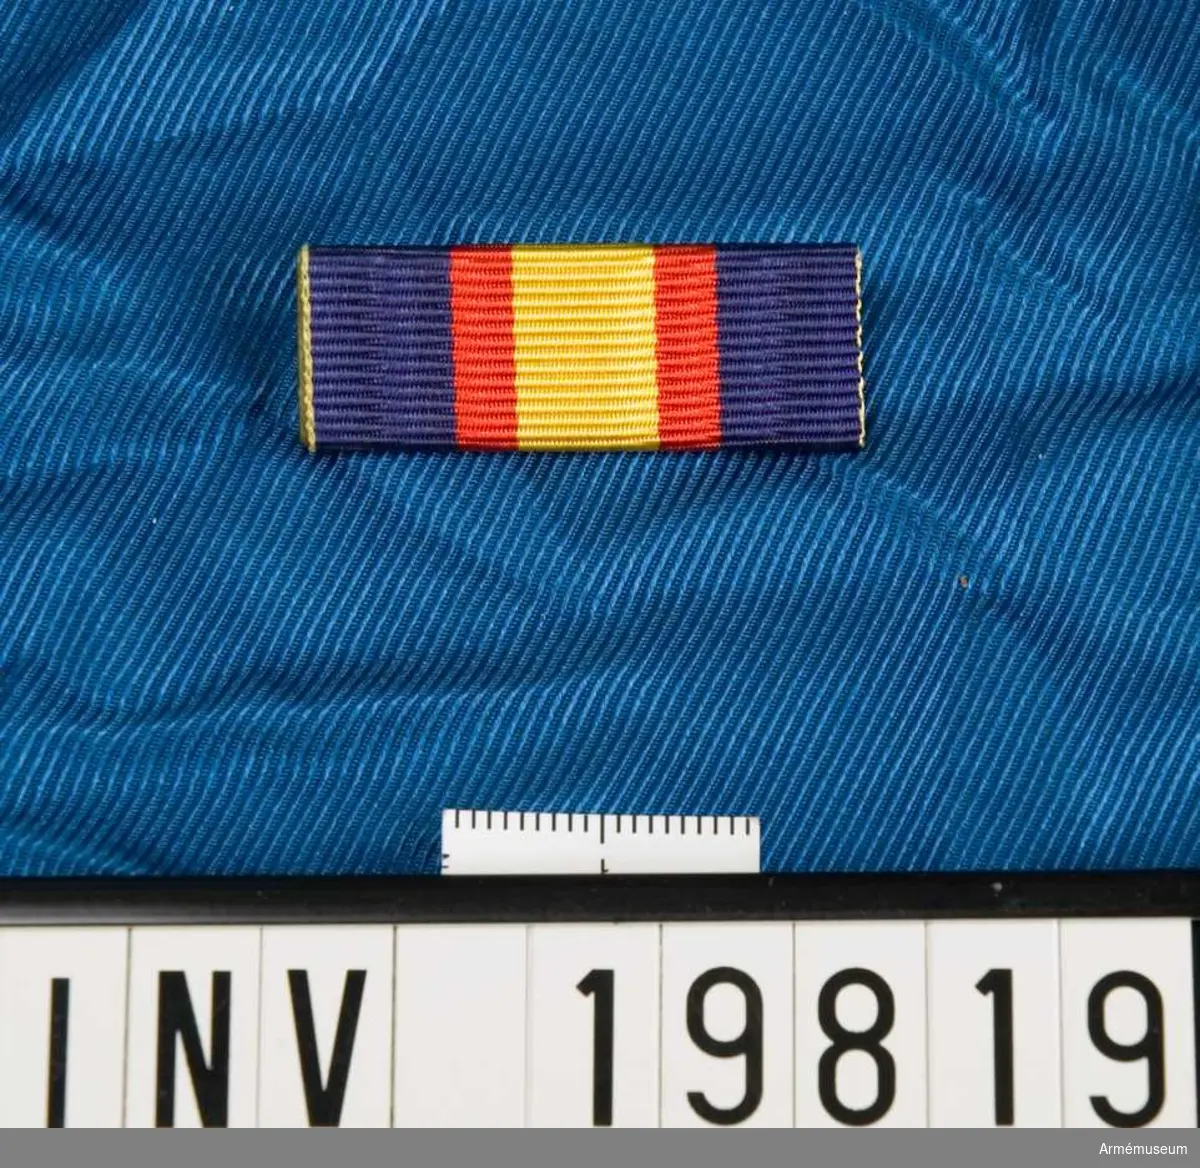 Blått band med en bred gul rand på mitten åtföljd av en röd rand på vardera sidan. Släpspännet förvaras i en ask tillsammans med en medalj och en miniatyrmedalj.